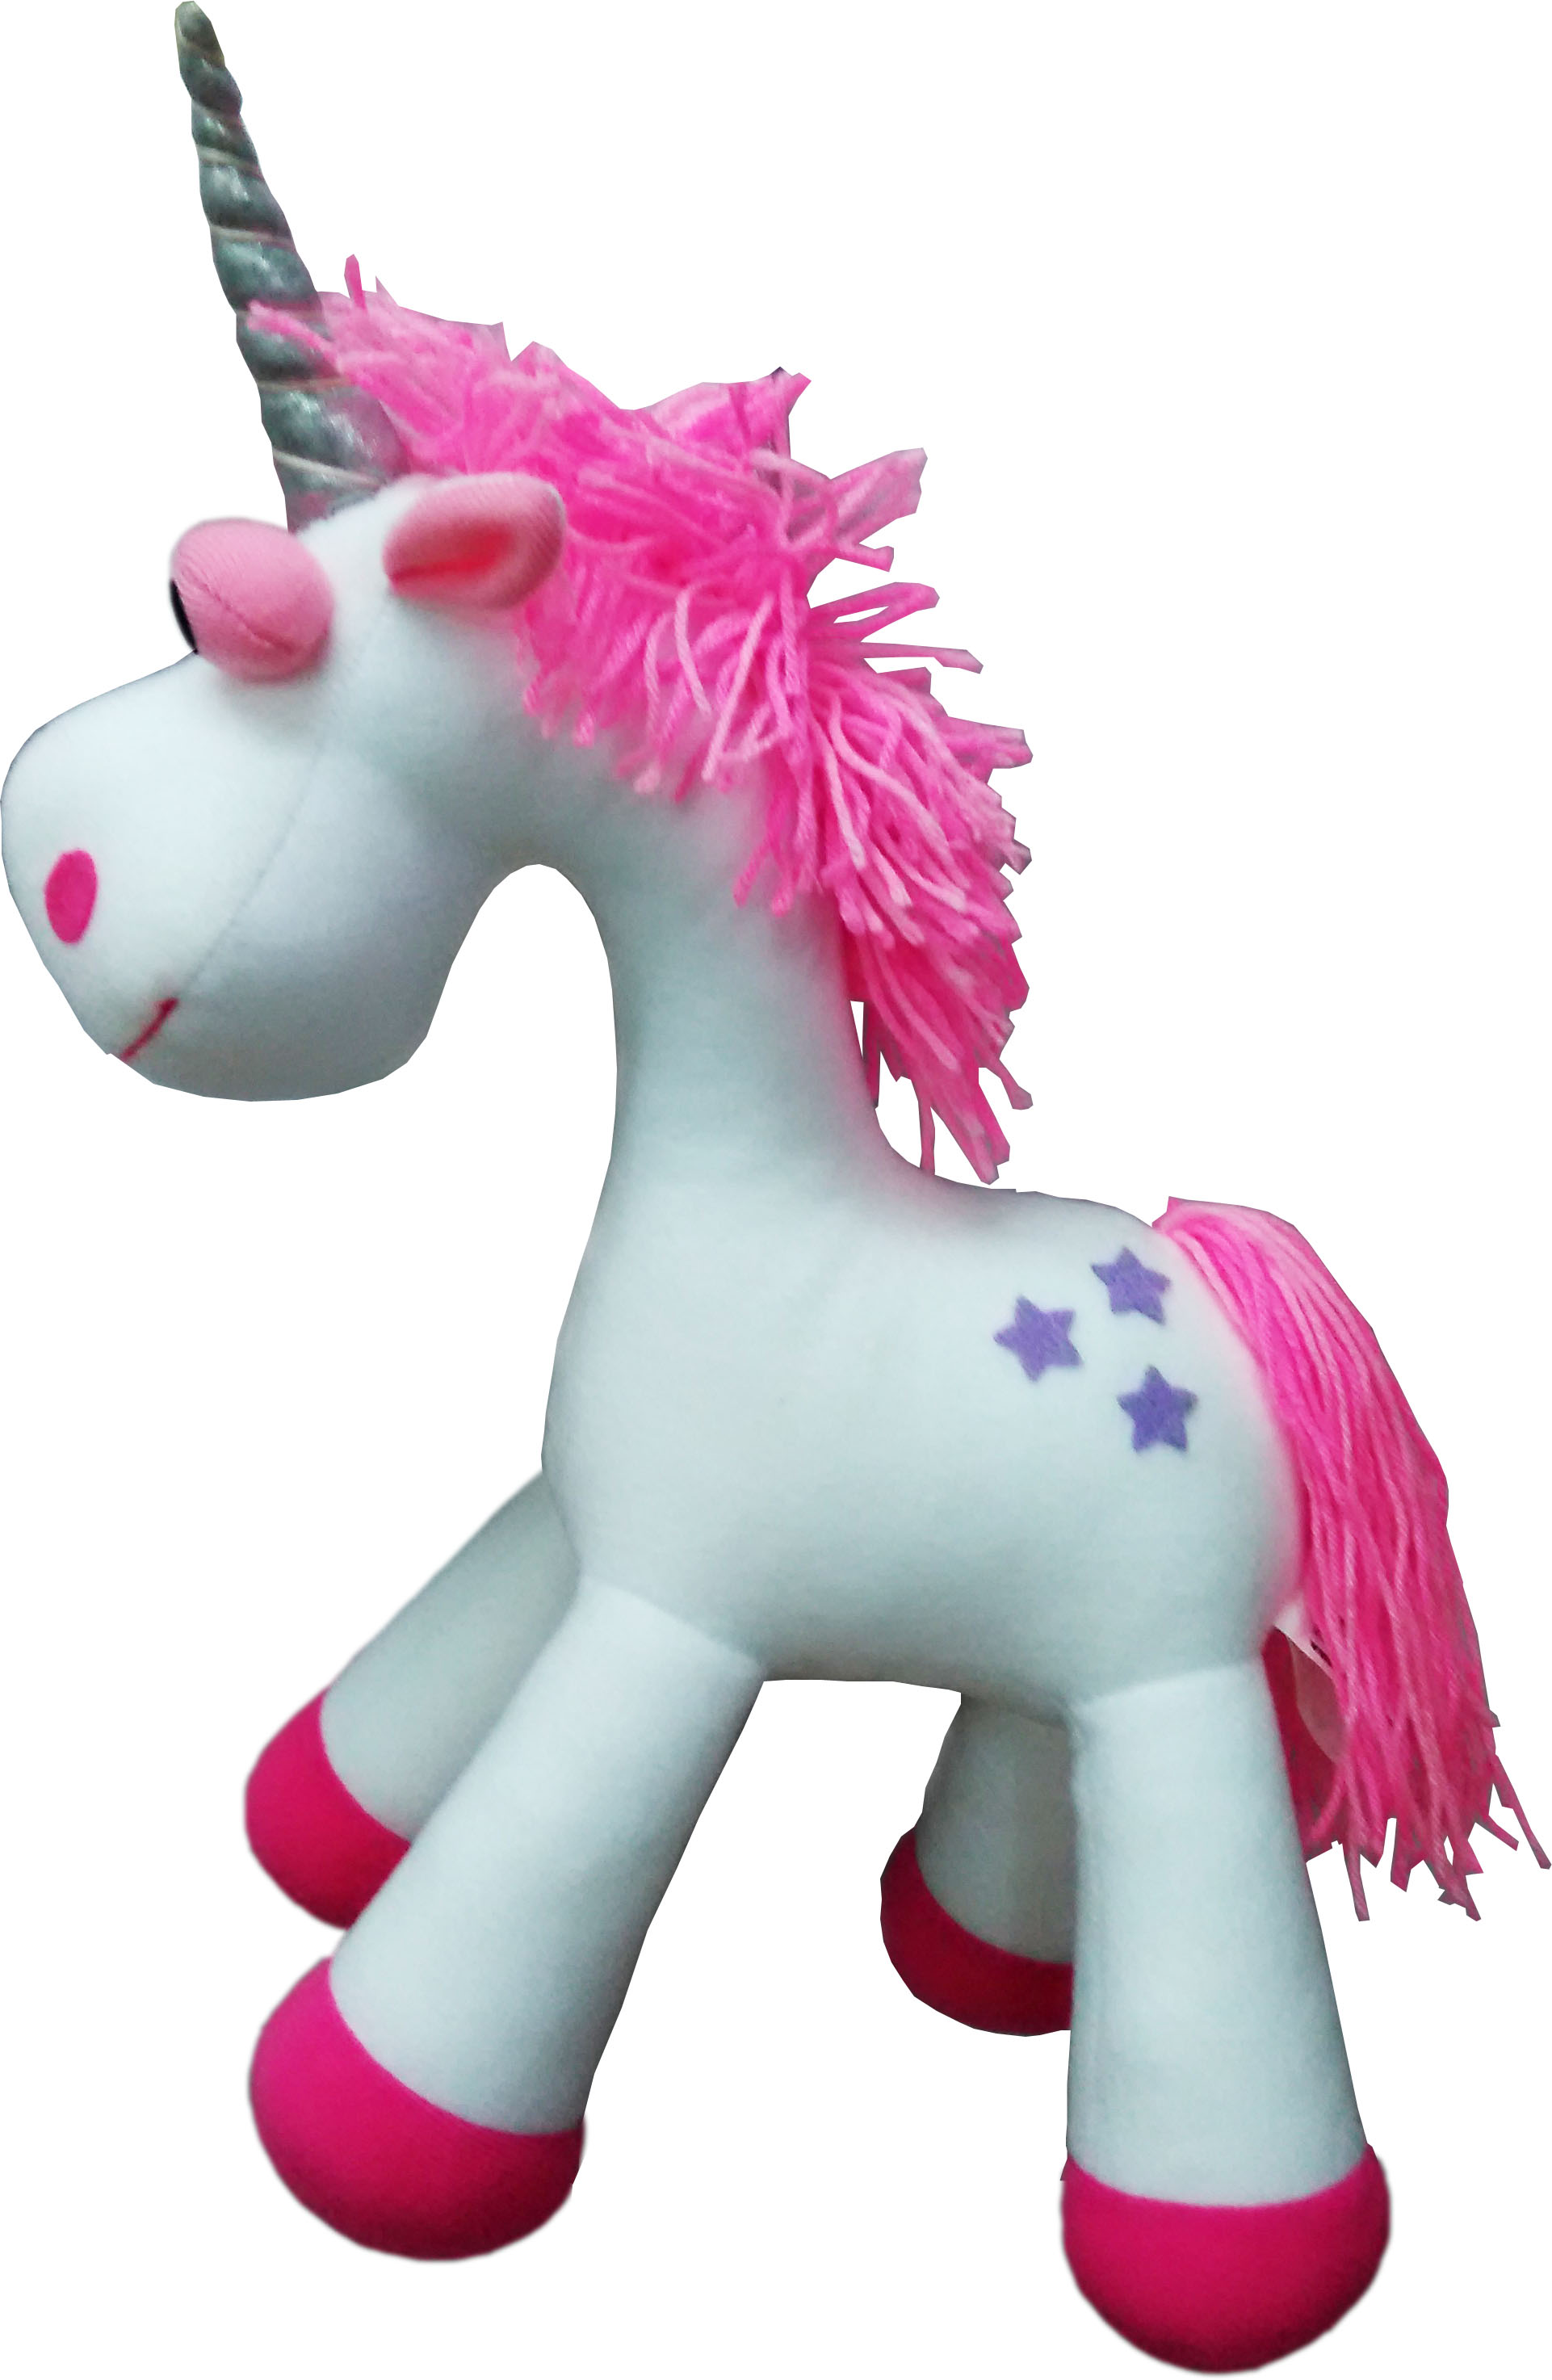 Springy unicorn mobile for children's bedroom ceiling